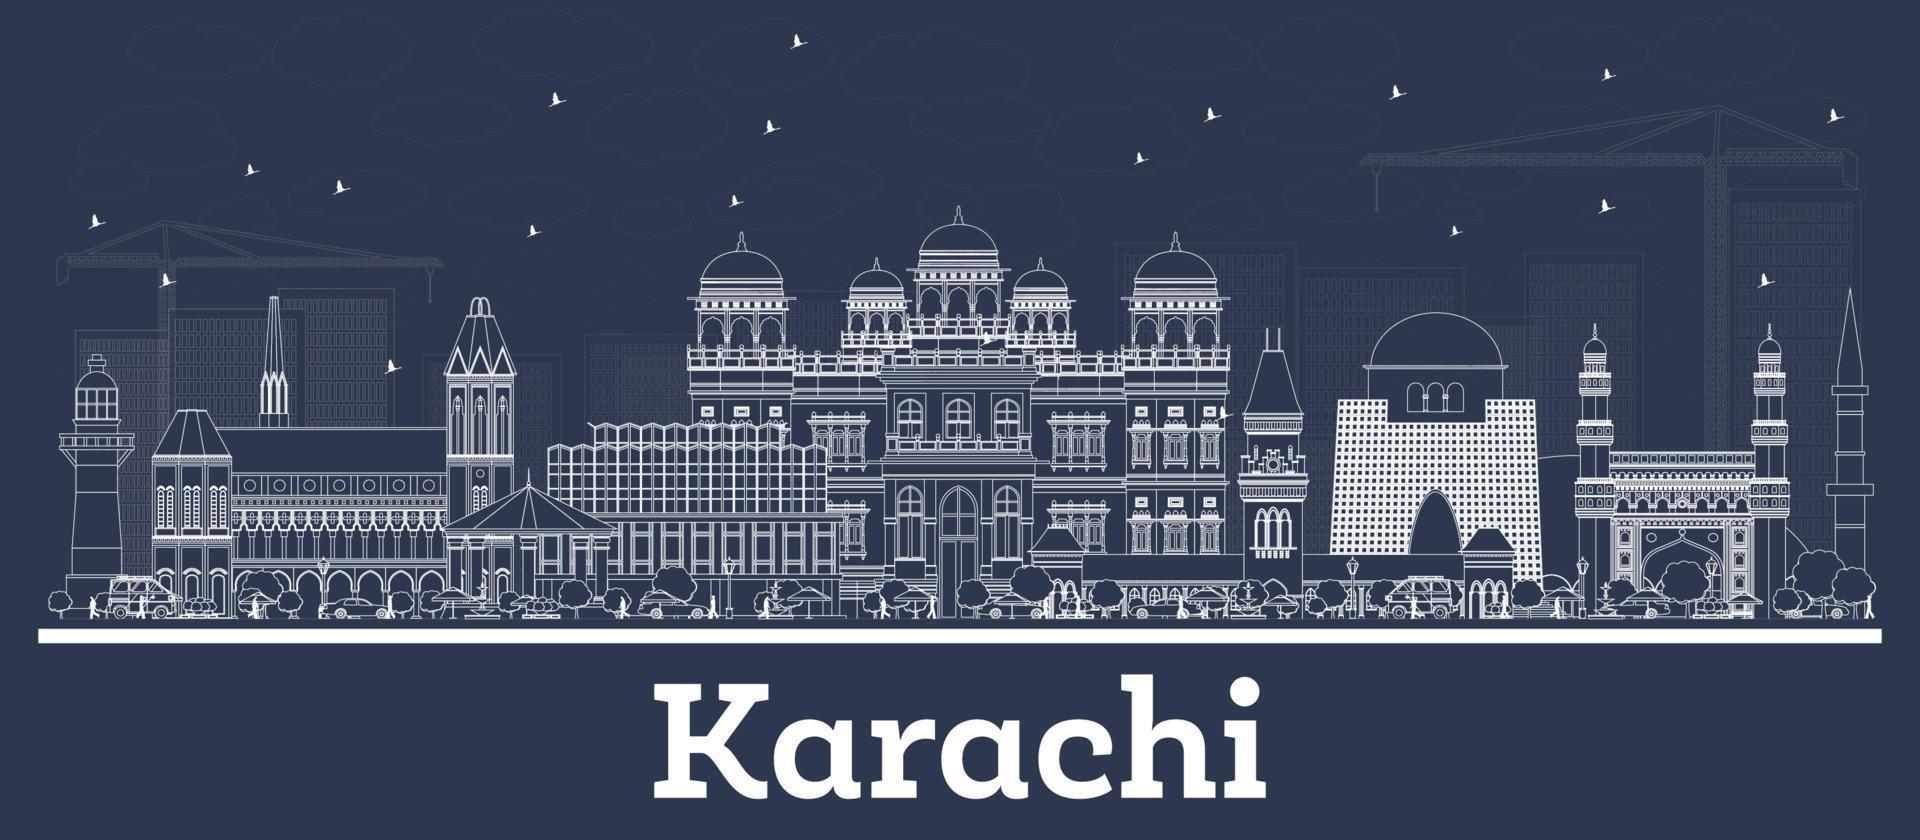 delinear el horizonte de la ciudad de karachi, pakistán, con edificios blancos. vector